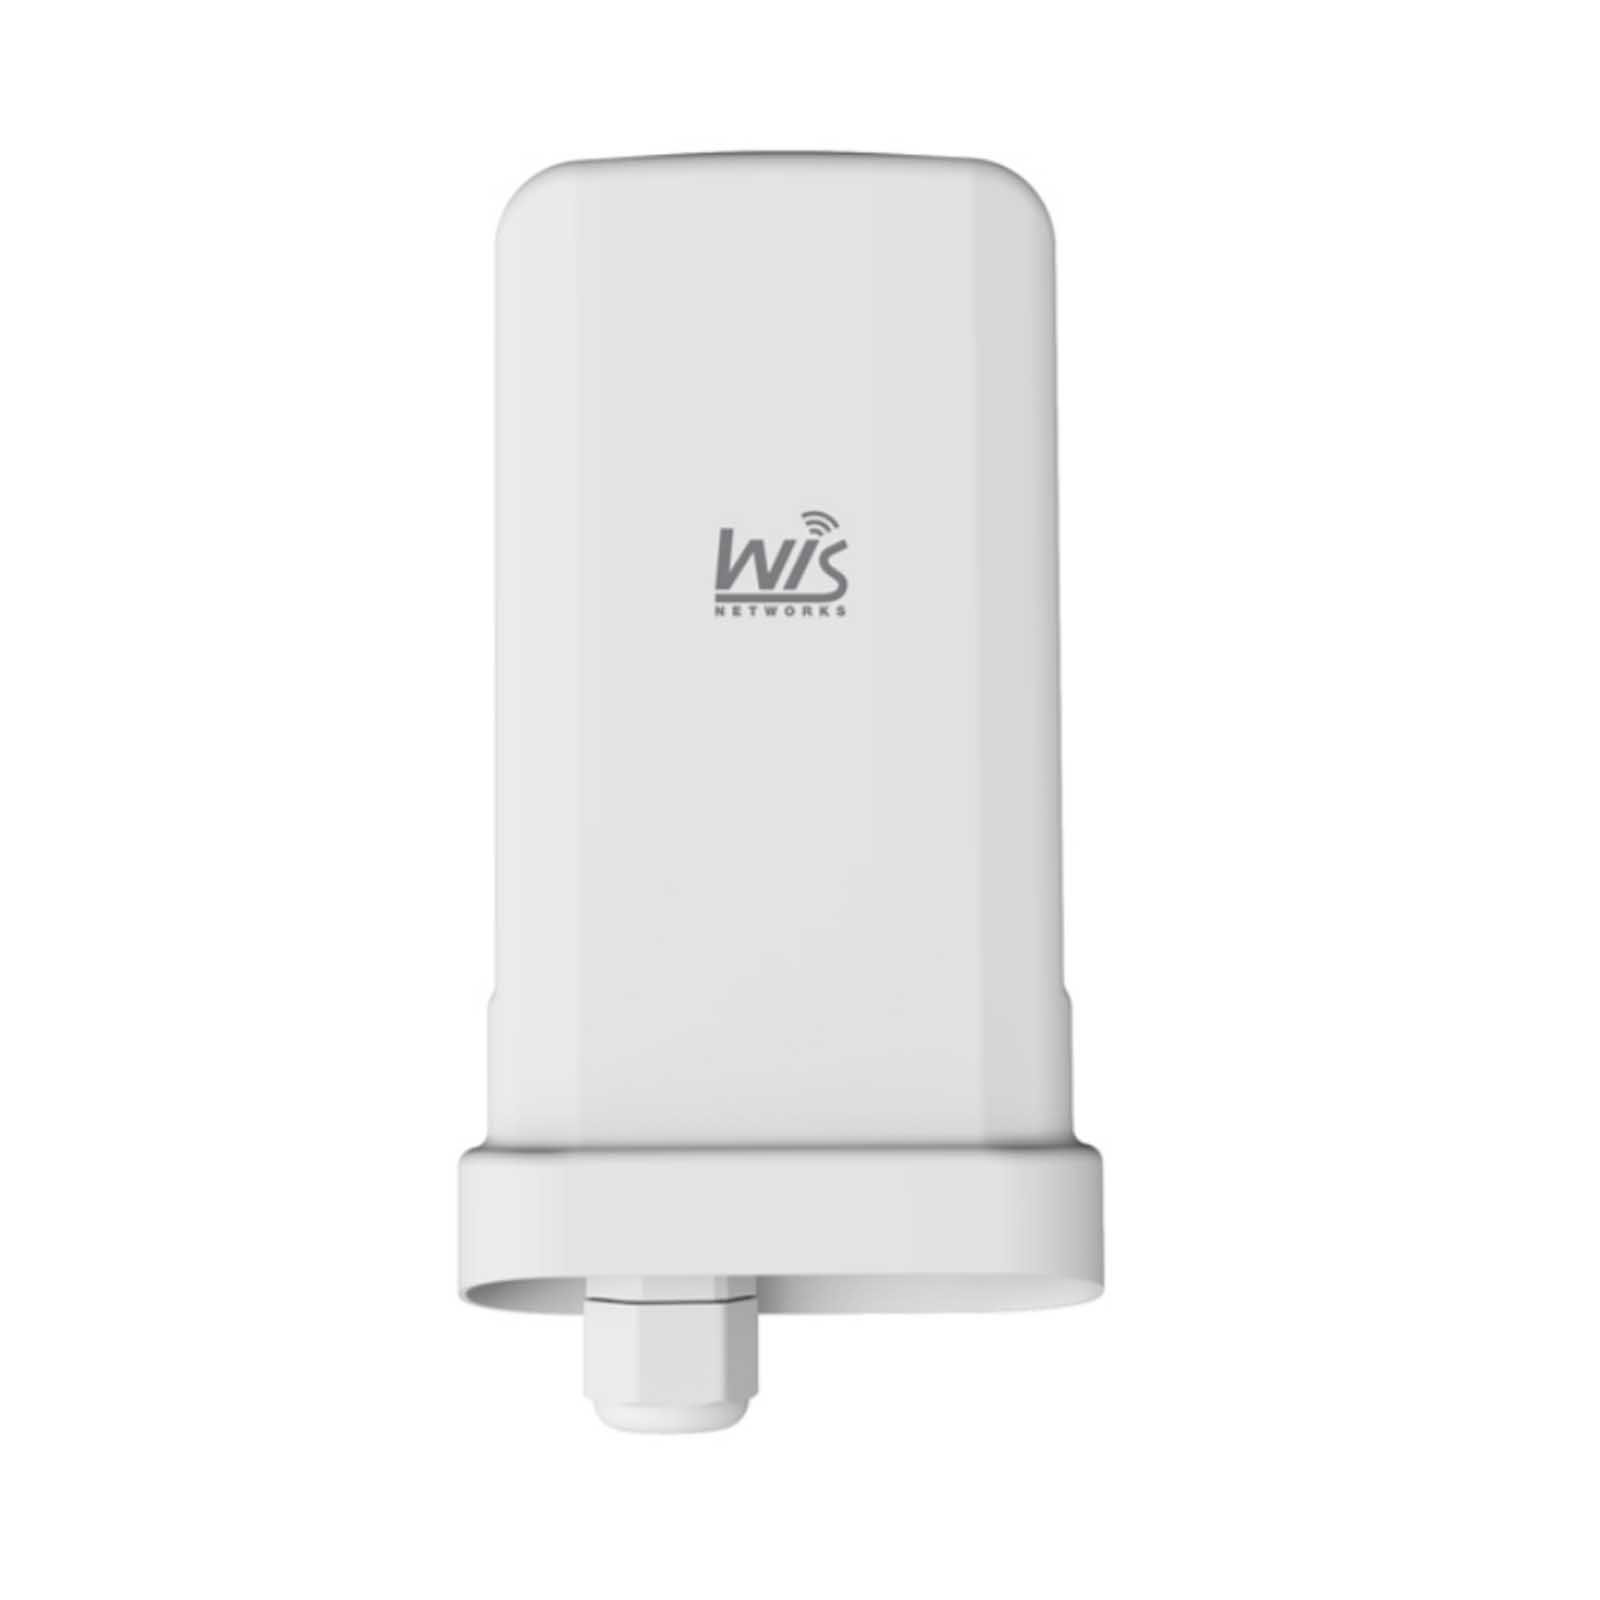 Wisnetworks WIS-Q2300L Hi-Gain Wireless CPE :: wisp.pl